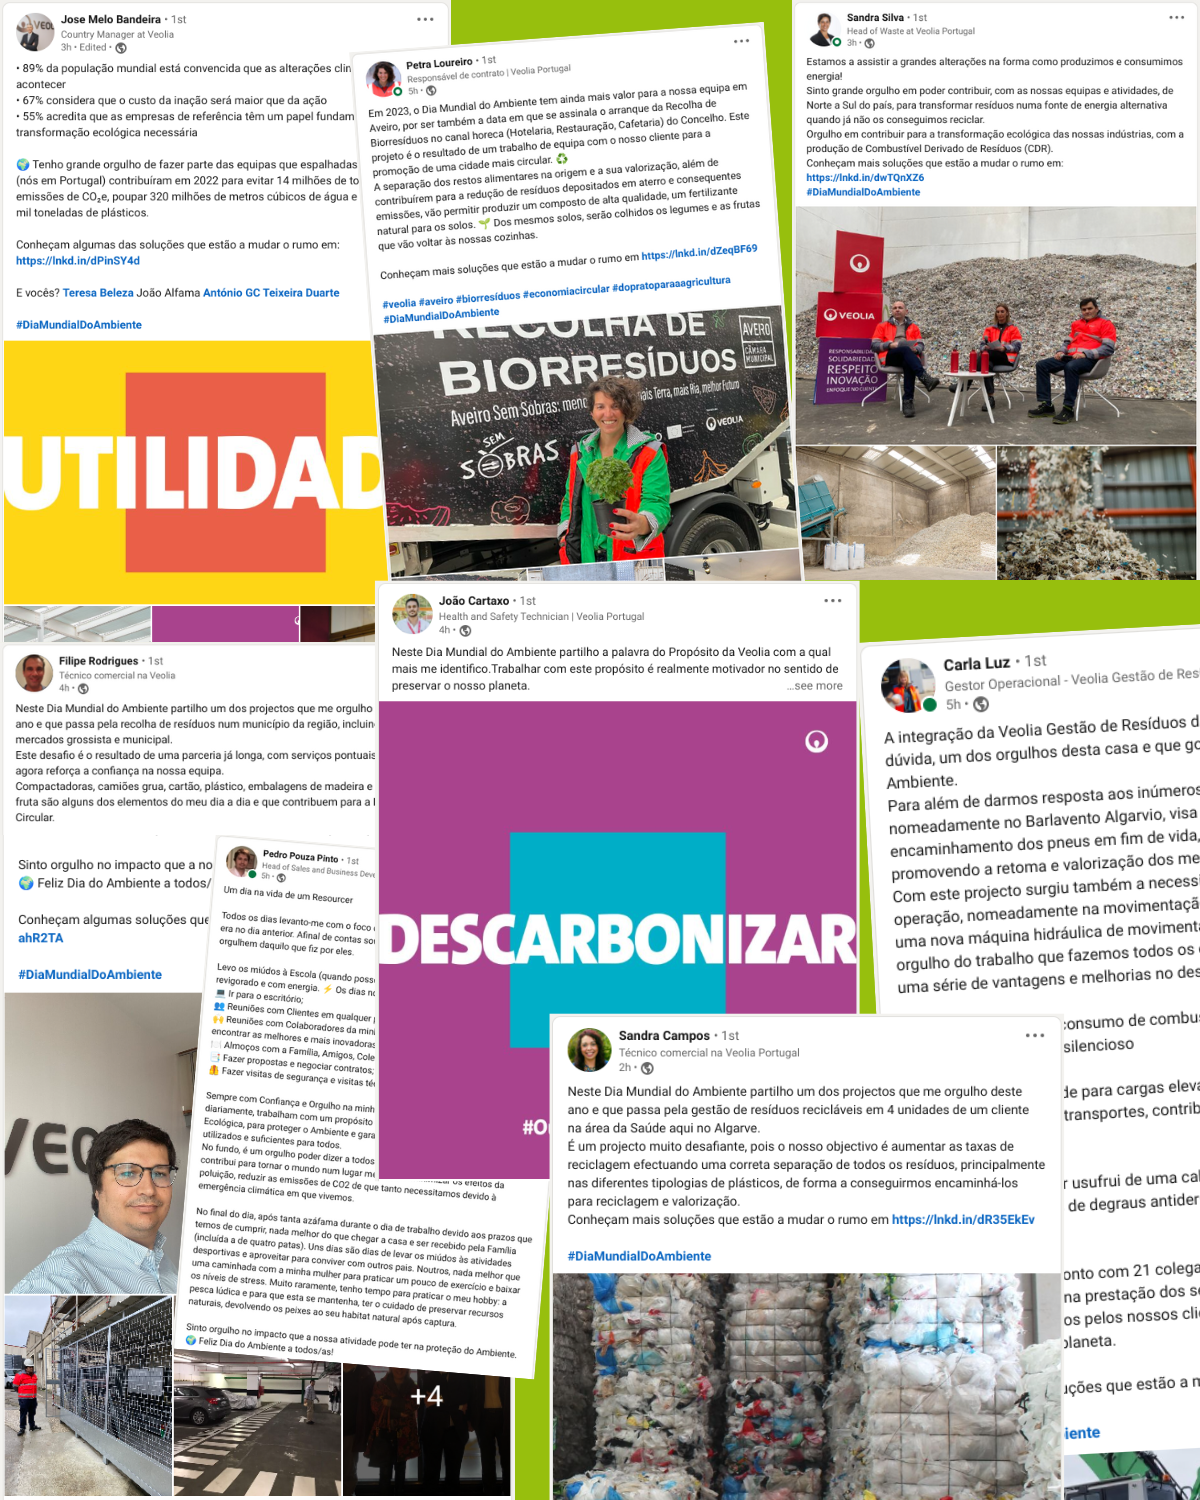 Resourcers Veolia celebram Dia Mundial do Ambiente no LinkedIn